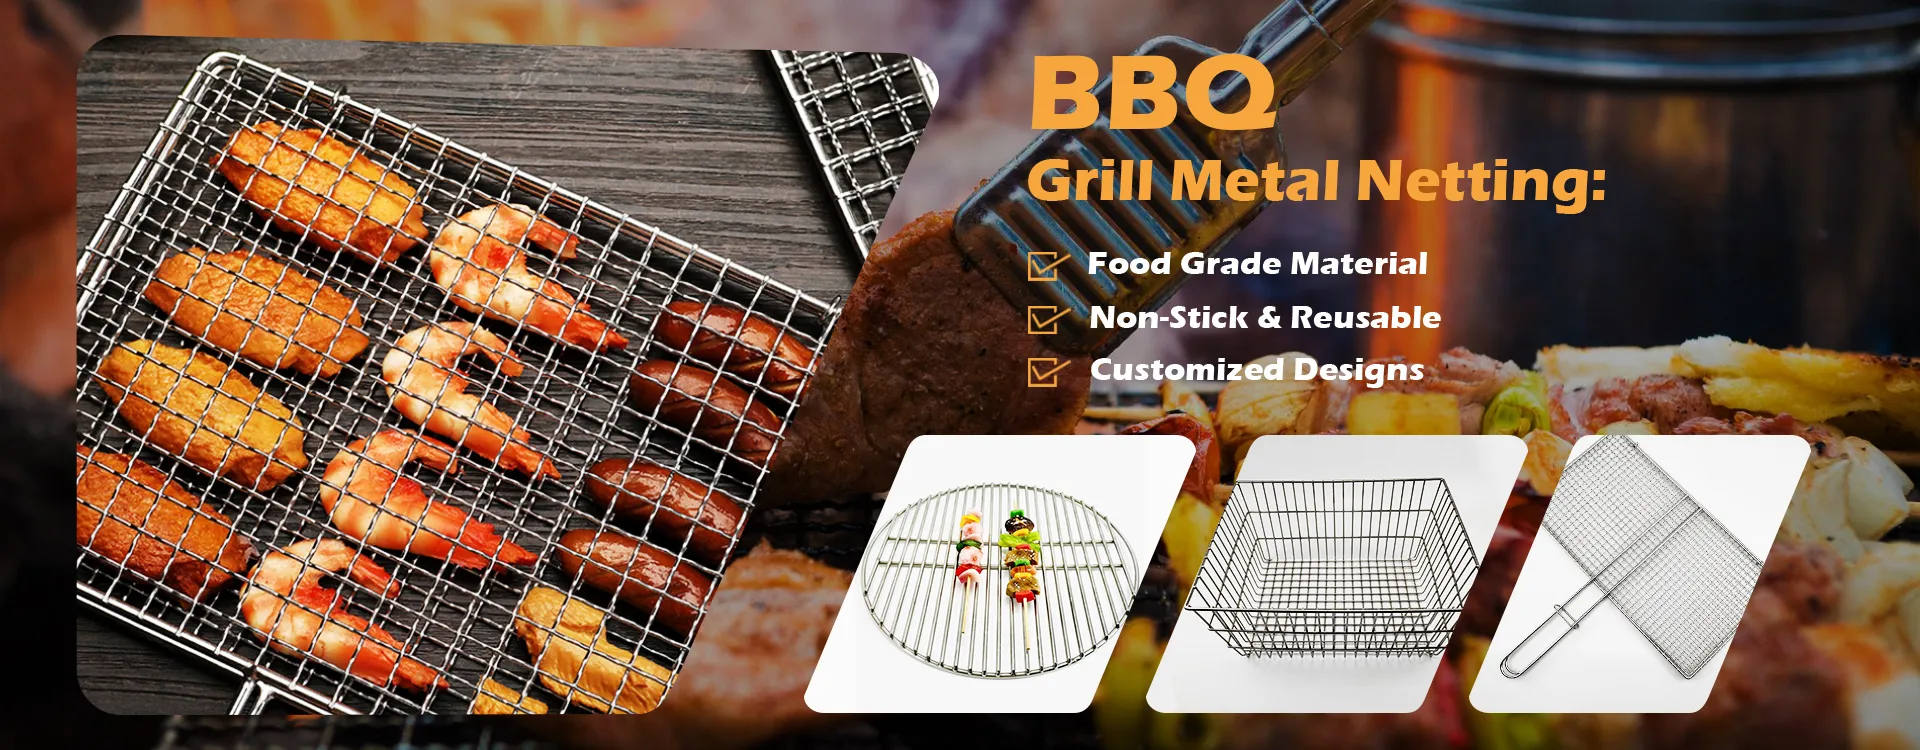 BBQ Grill Metal Netting